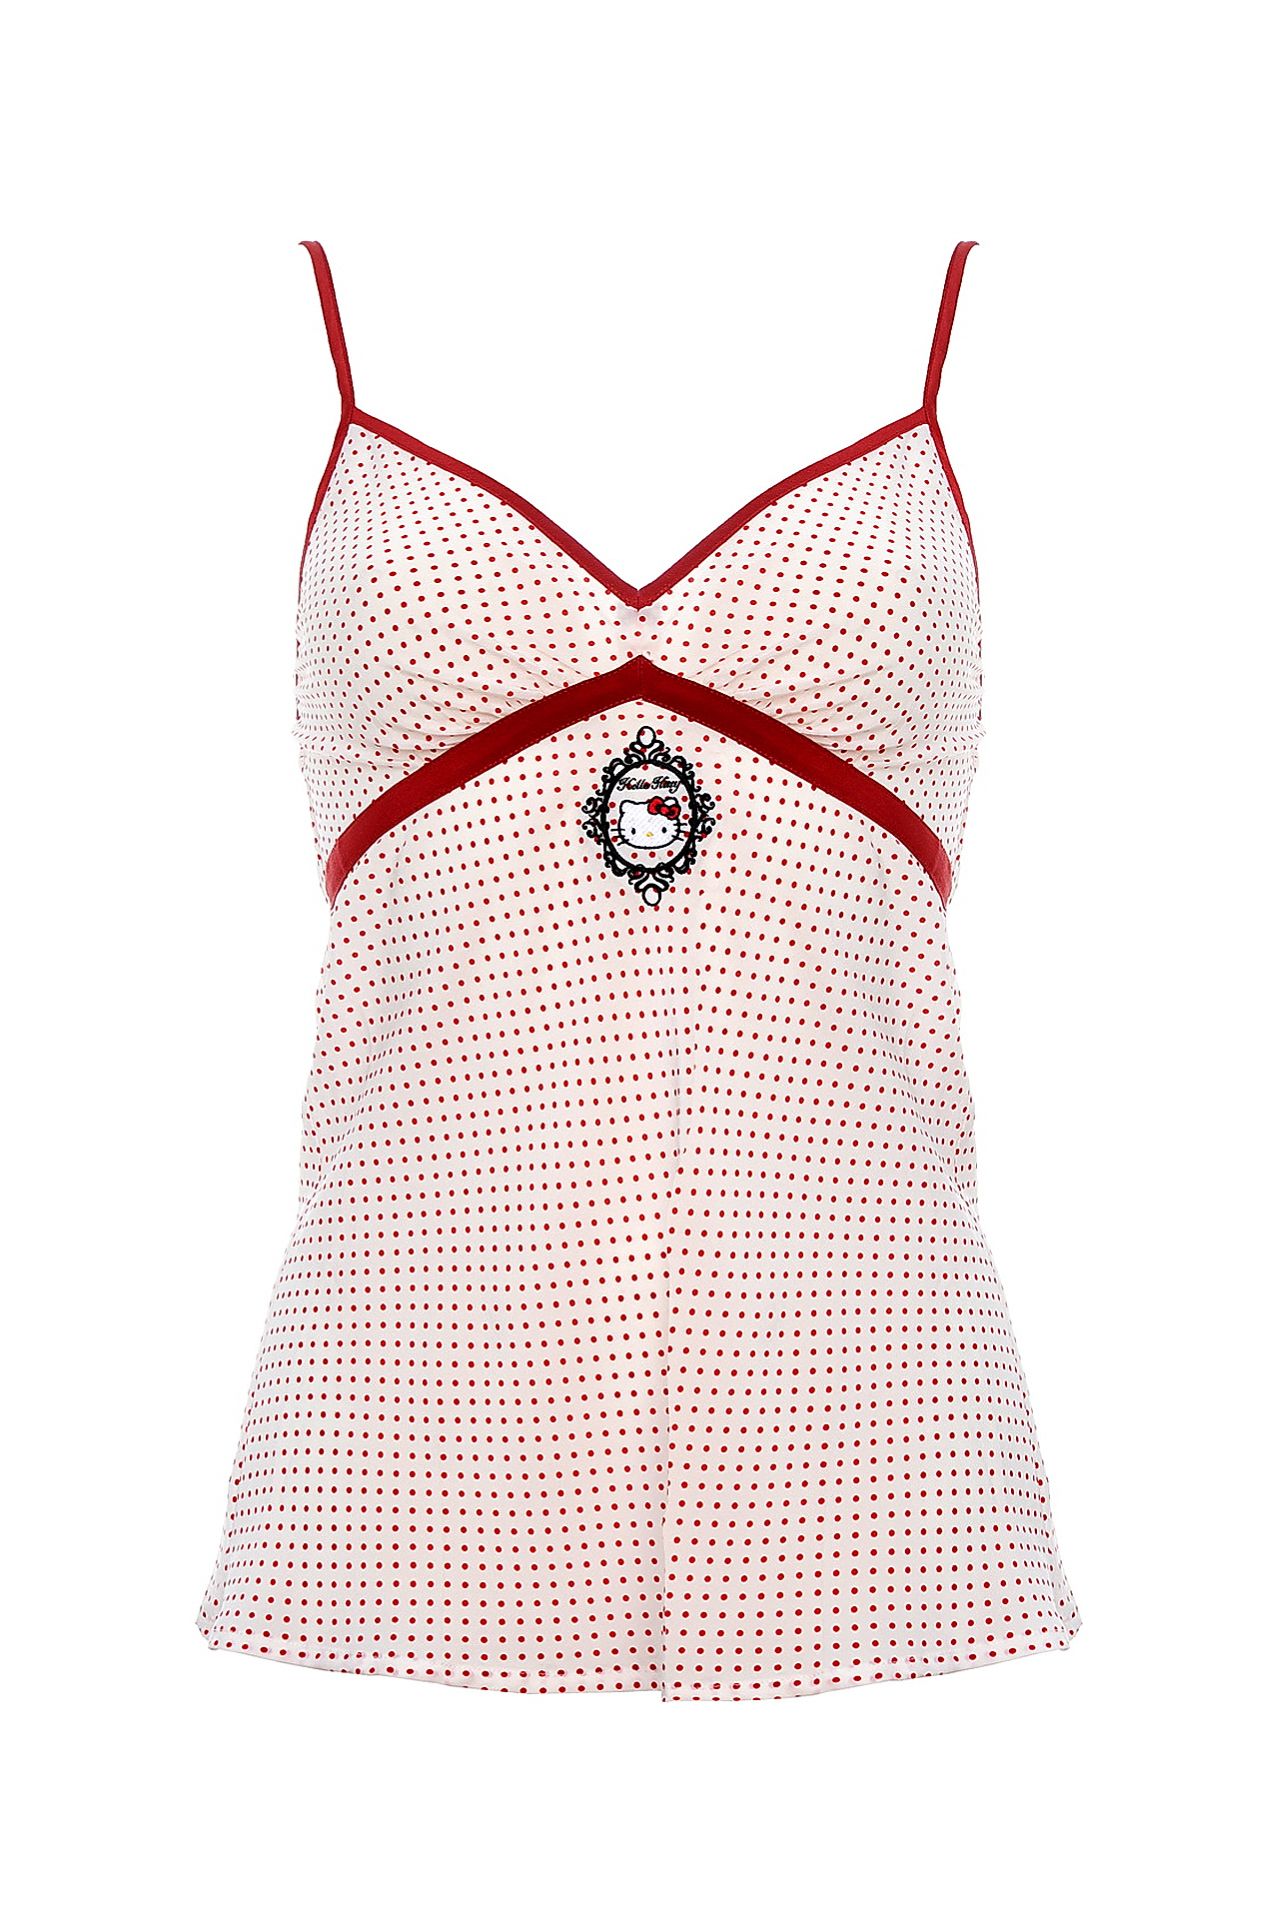 Одежда женская Топ VICTORIA COUTURE (W8LOTP/18). Купить за 5450 руб.